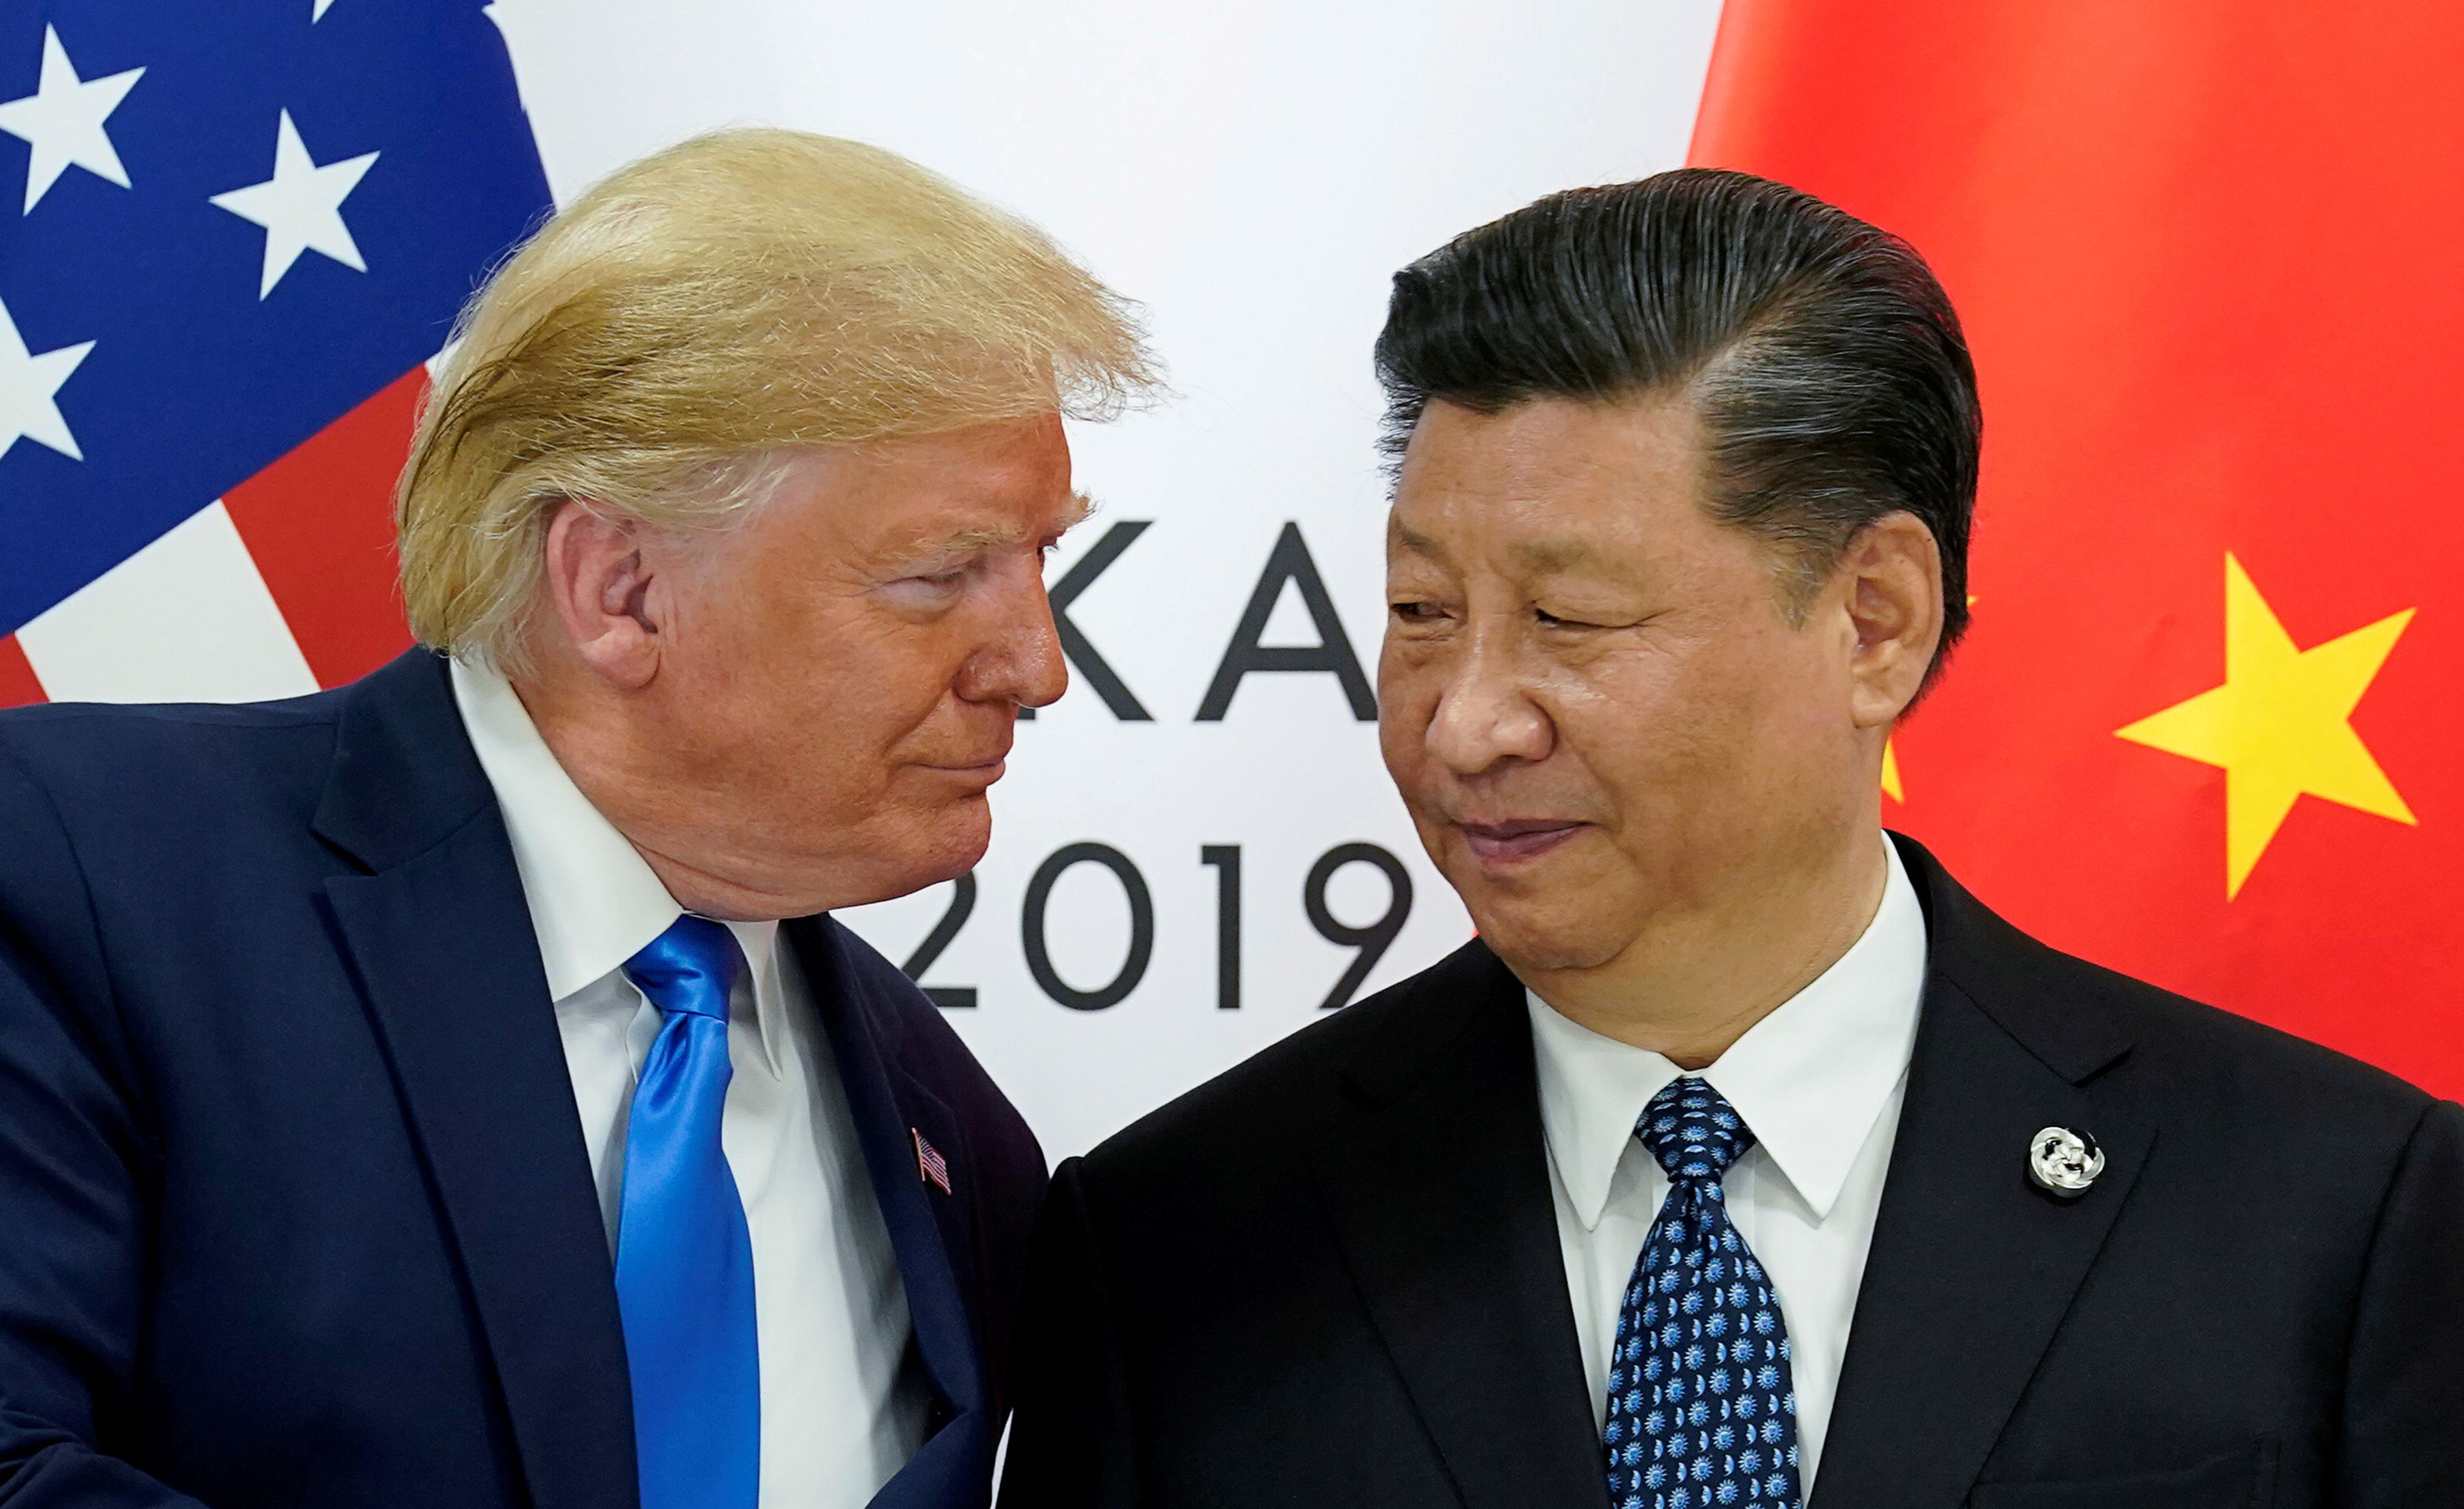 Donald Trump, presidente de los Estados Unidos y Xi Jinping, presidente de China, durante la reunión del G20 en Osaka (Japón) celebrada en junio de 2019..